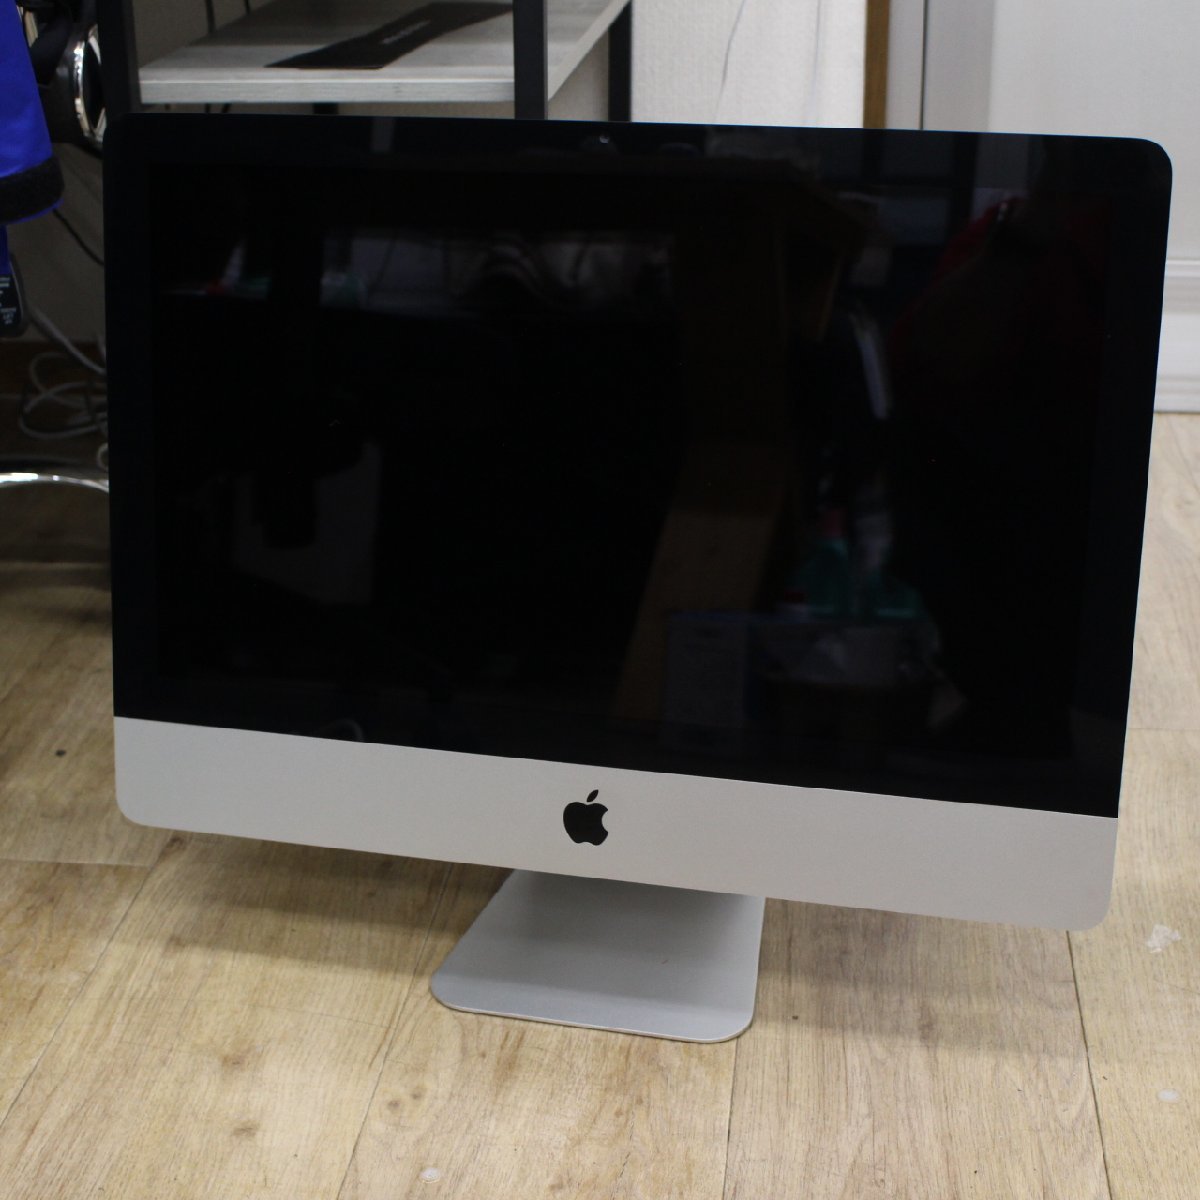 東京都狛江市にて Apple iMac A1311 2011年製 を出張買取させて頂きました。